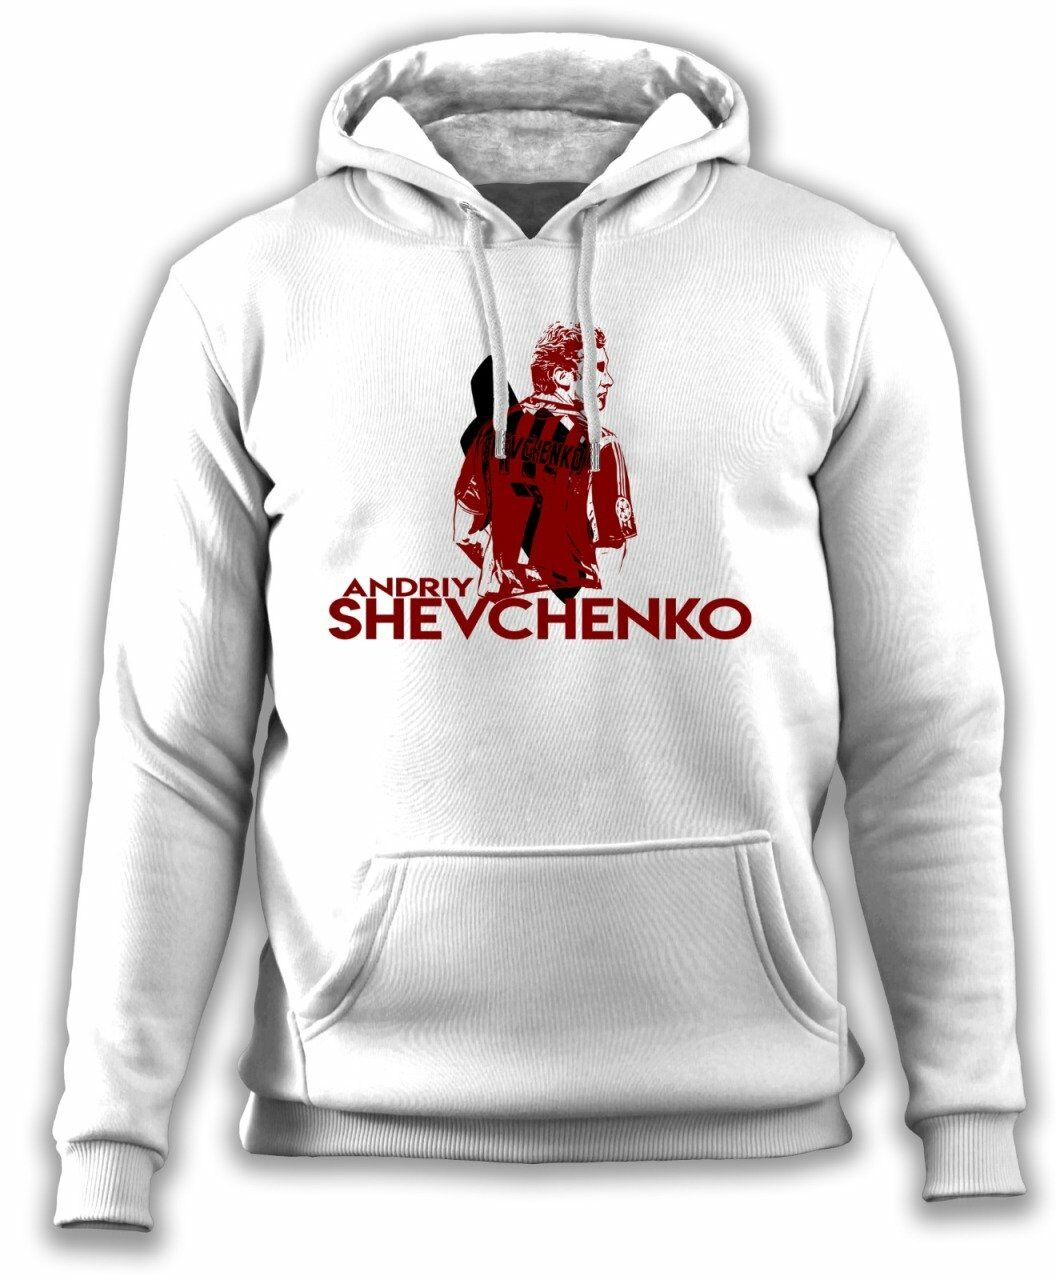 Shevchenko Sweatshirt